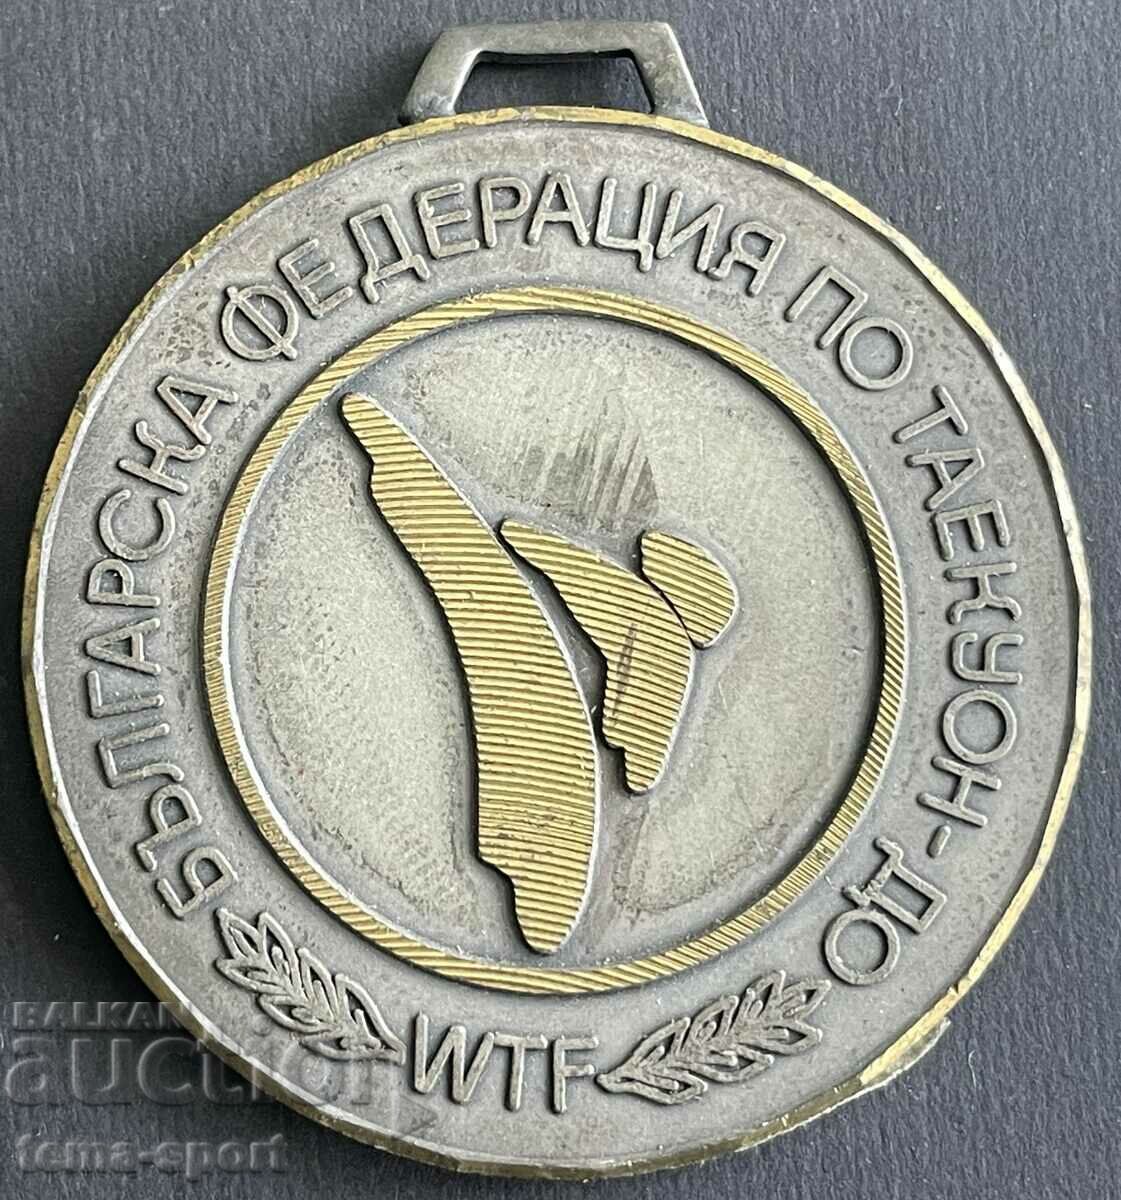 679 Βουλγαρία μετάλλιο Βουλγαρικής Ομοσπονδίας Tycoon μέχρι το 2000